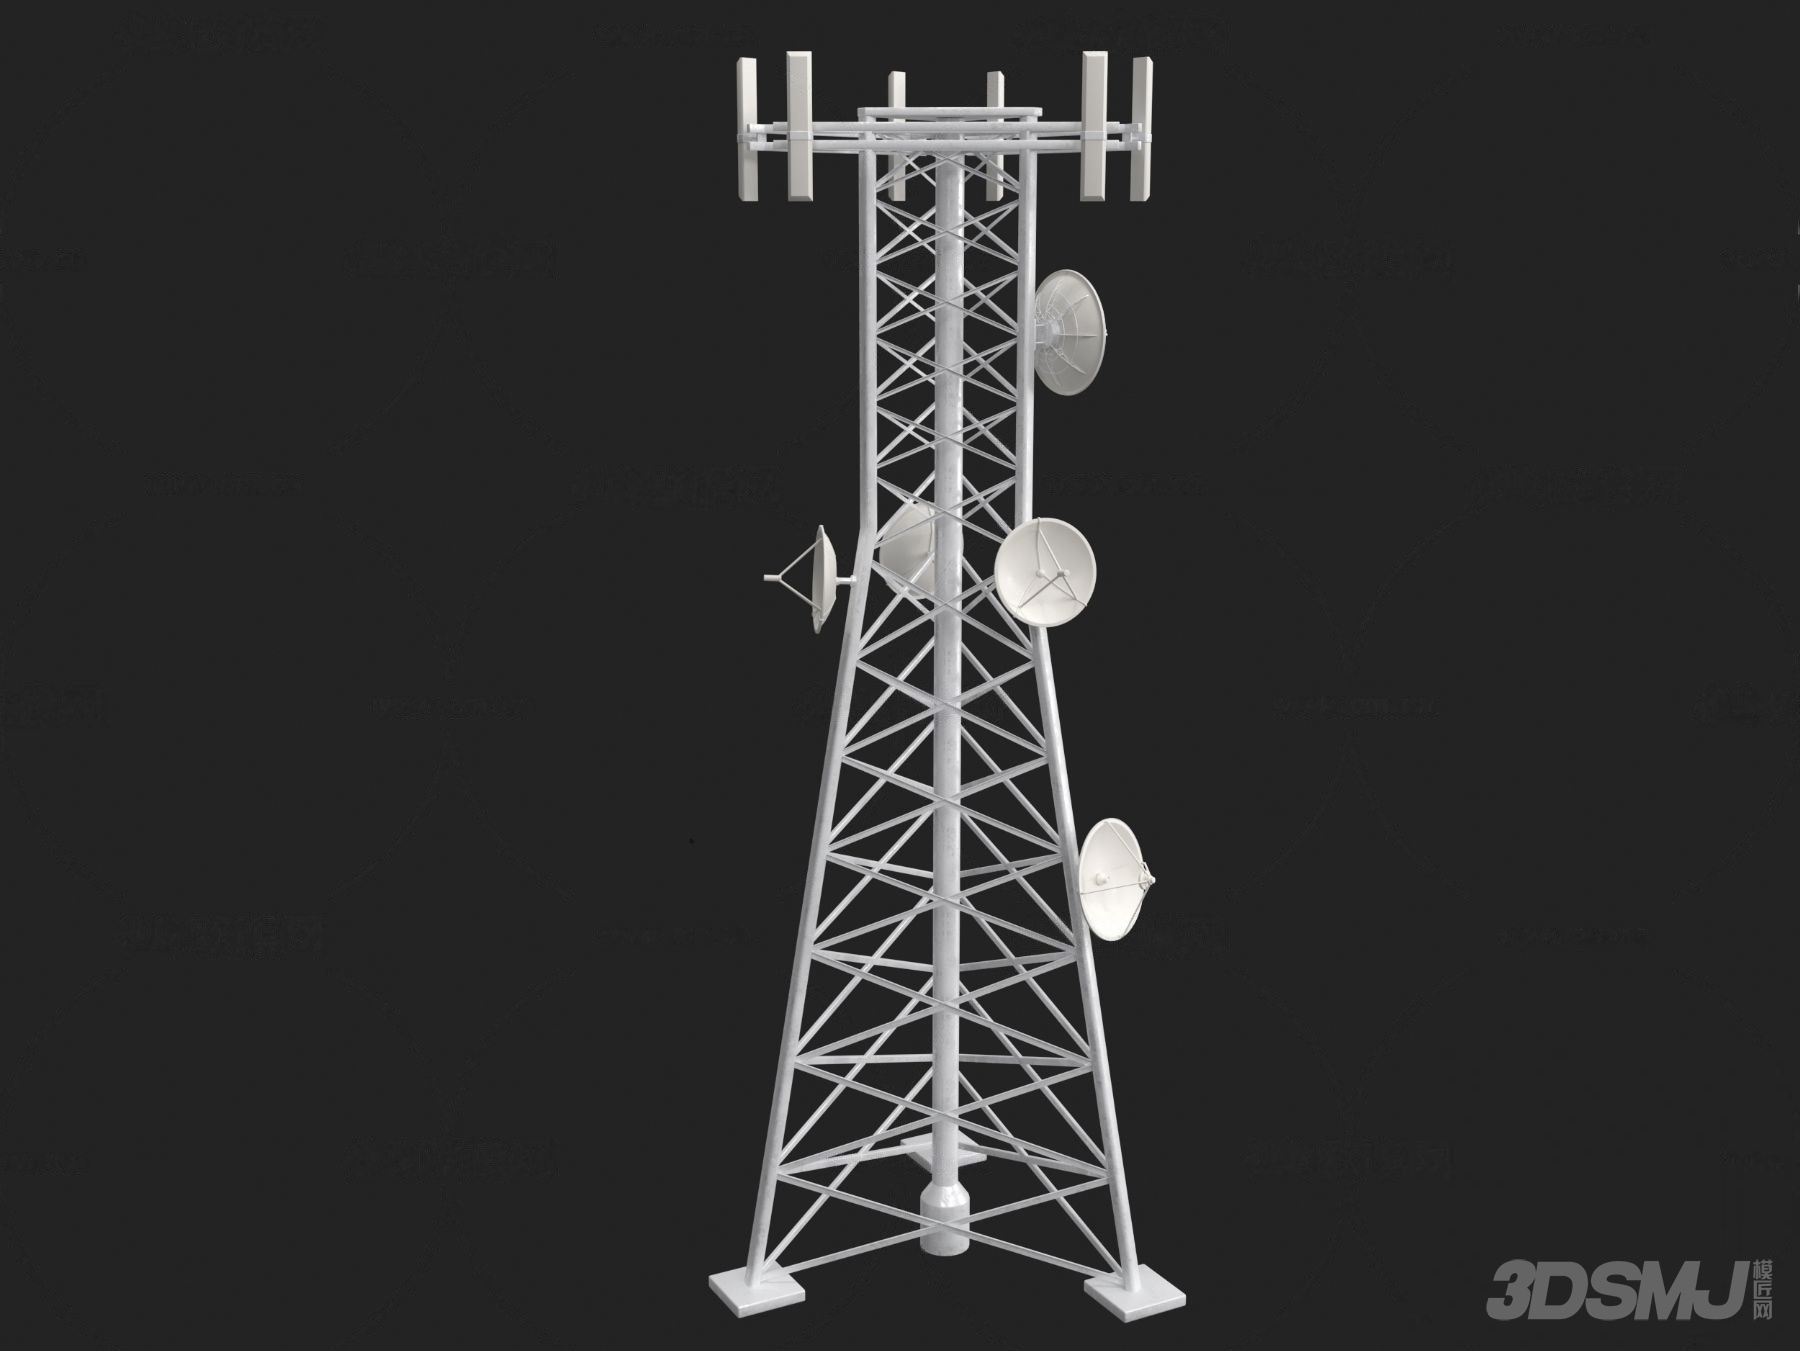 5G 网络信号塔模型图像：通向未来世界的桥梁与科技梦想的象征